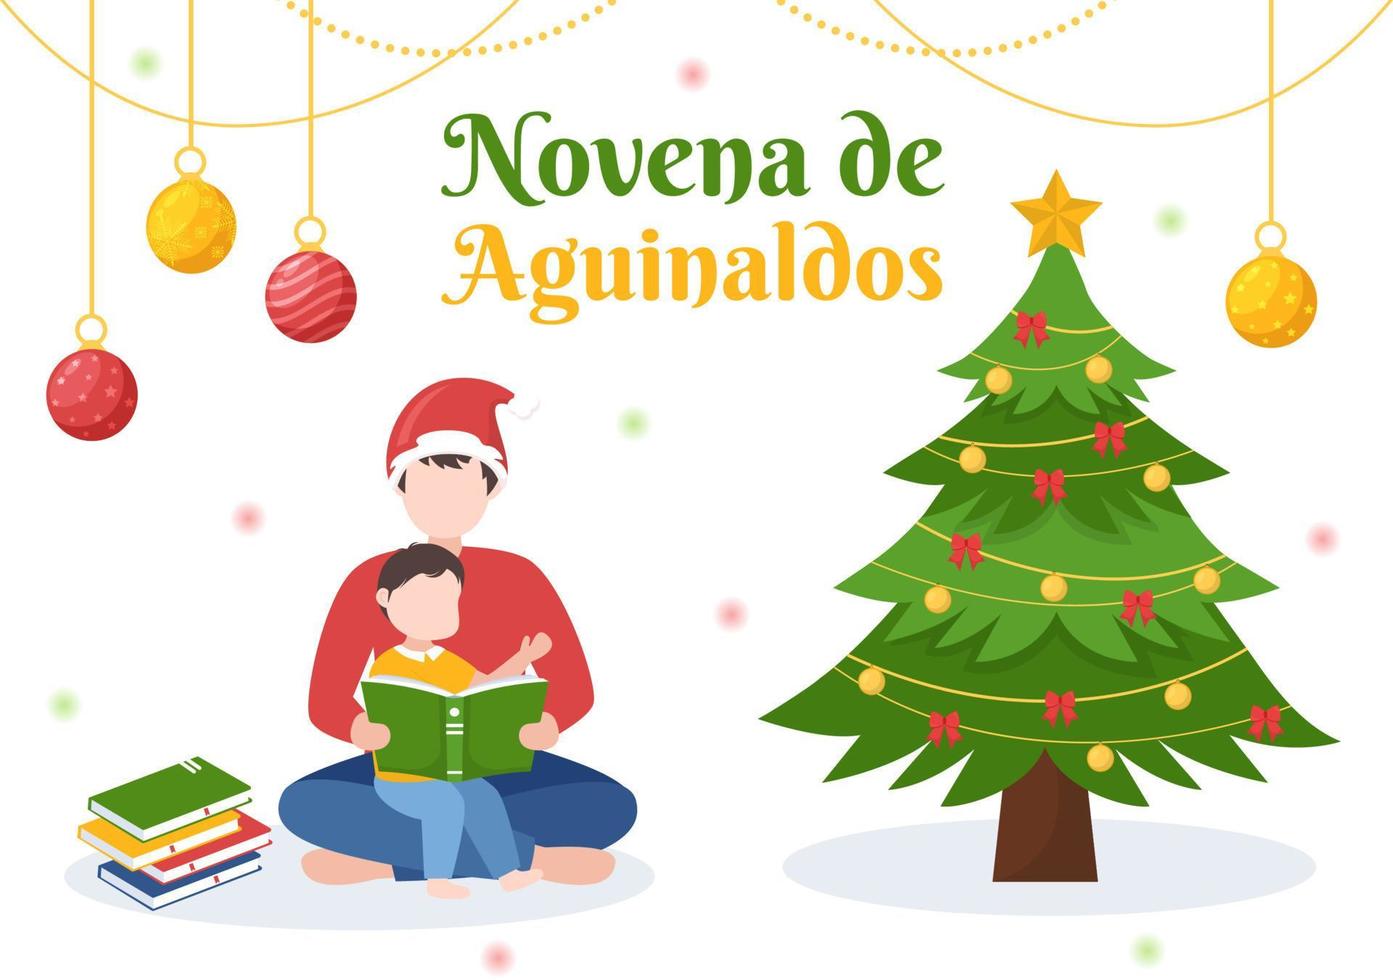 novena de aguinaldos tradición navideña en colombia para que las familias se reúnan en navidad en dibujos animados planos dibujados a mano ilustración de plantillas vector